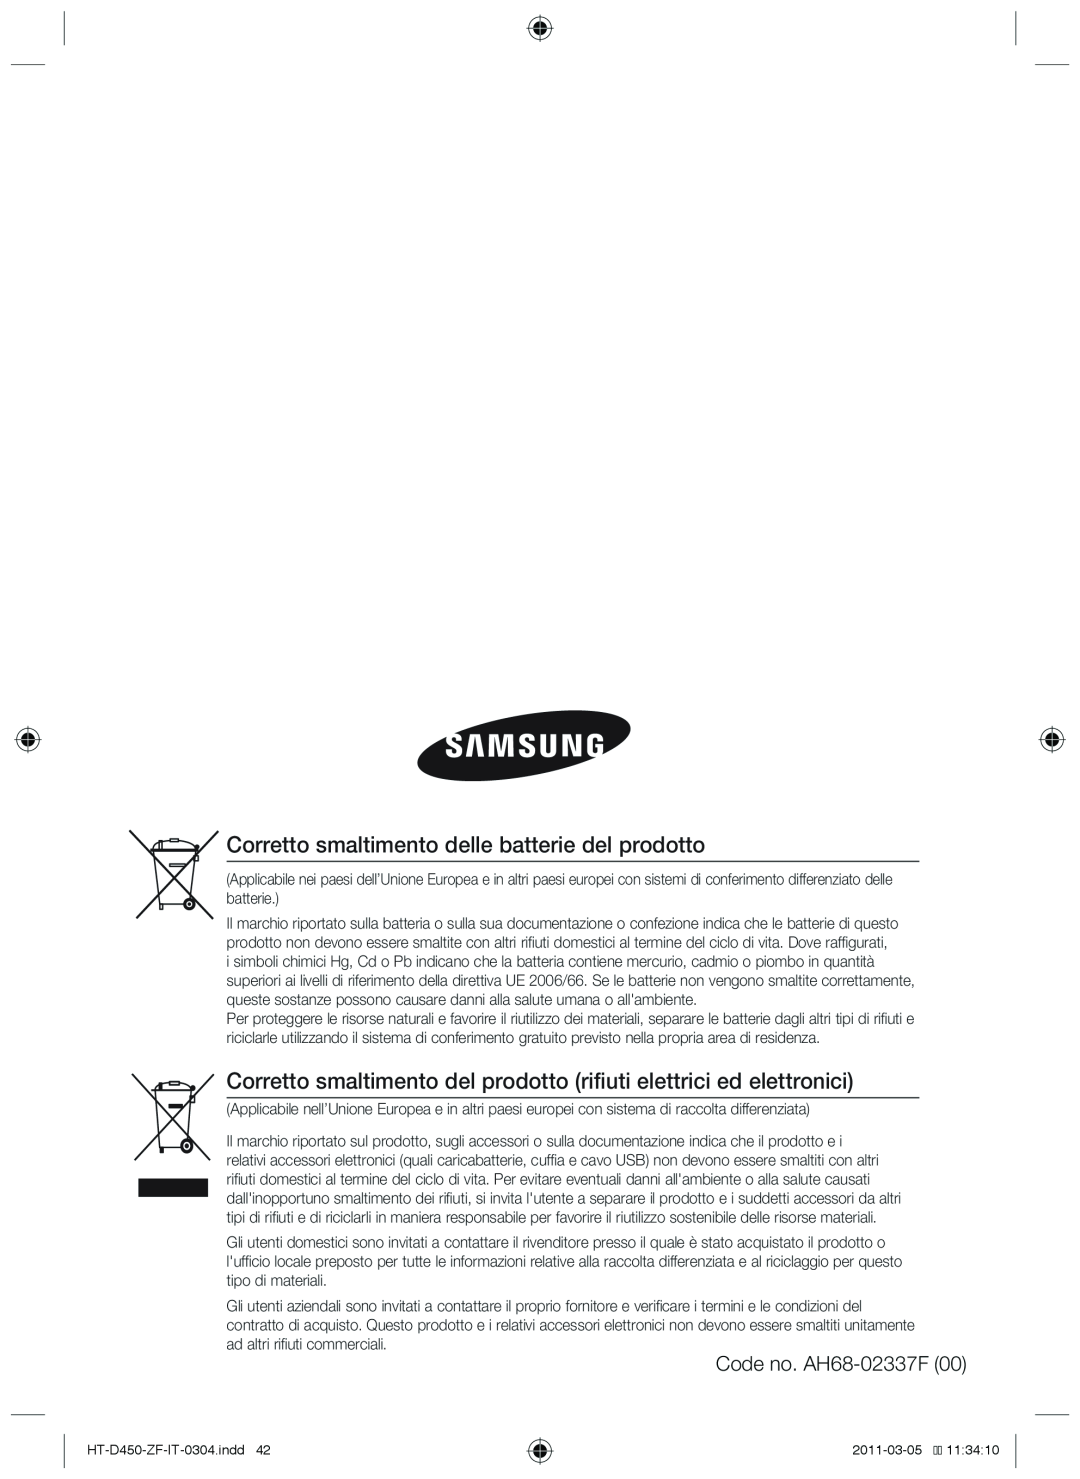 Samsung HT-D450, HT-D455, HT-D453 user manual Corretto smaltimento delle batterie del prodotto, Code no. AH68-02337F00 